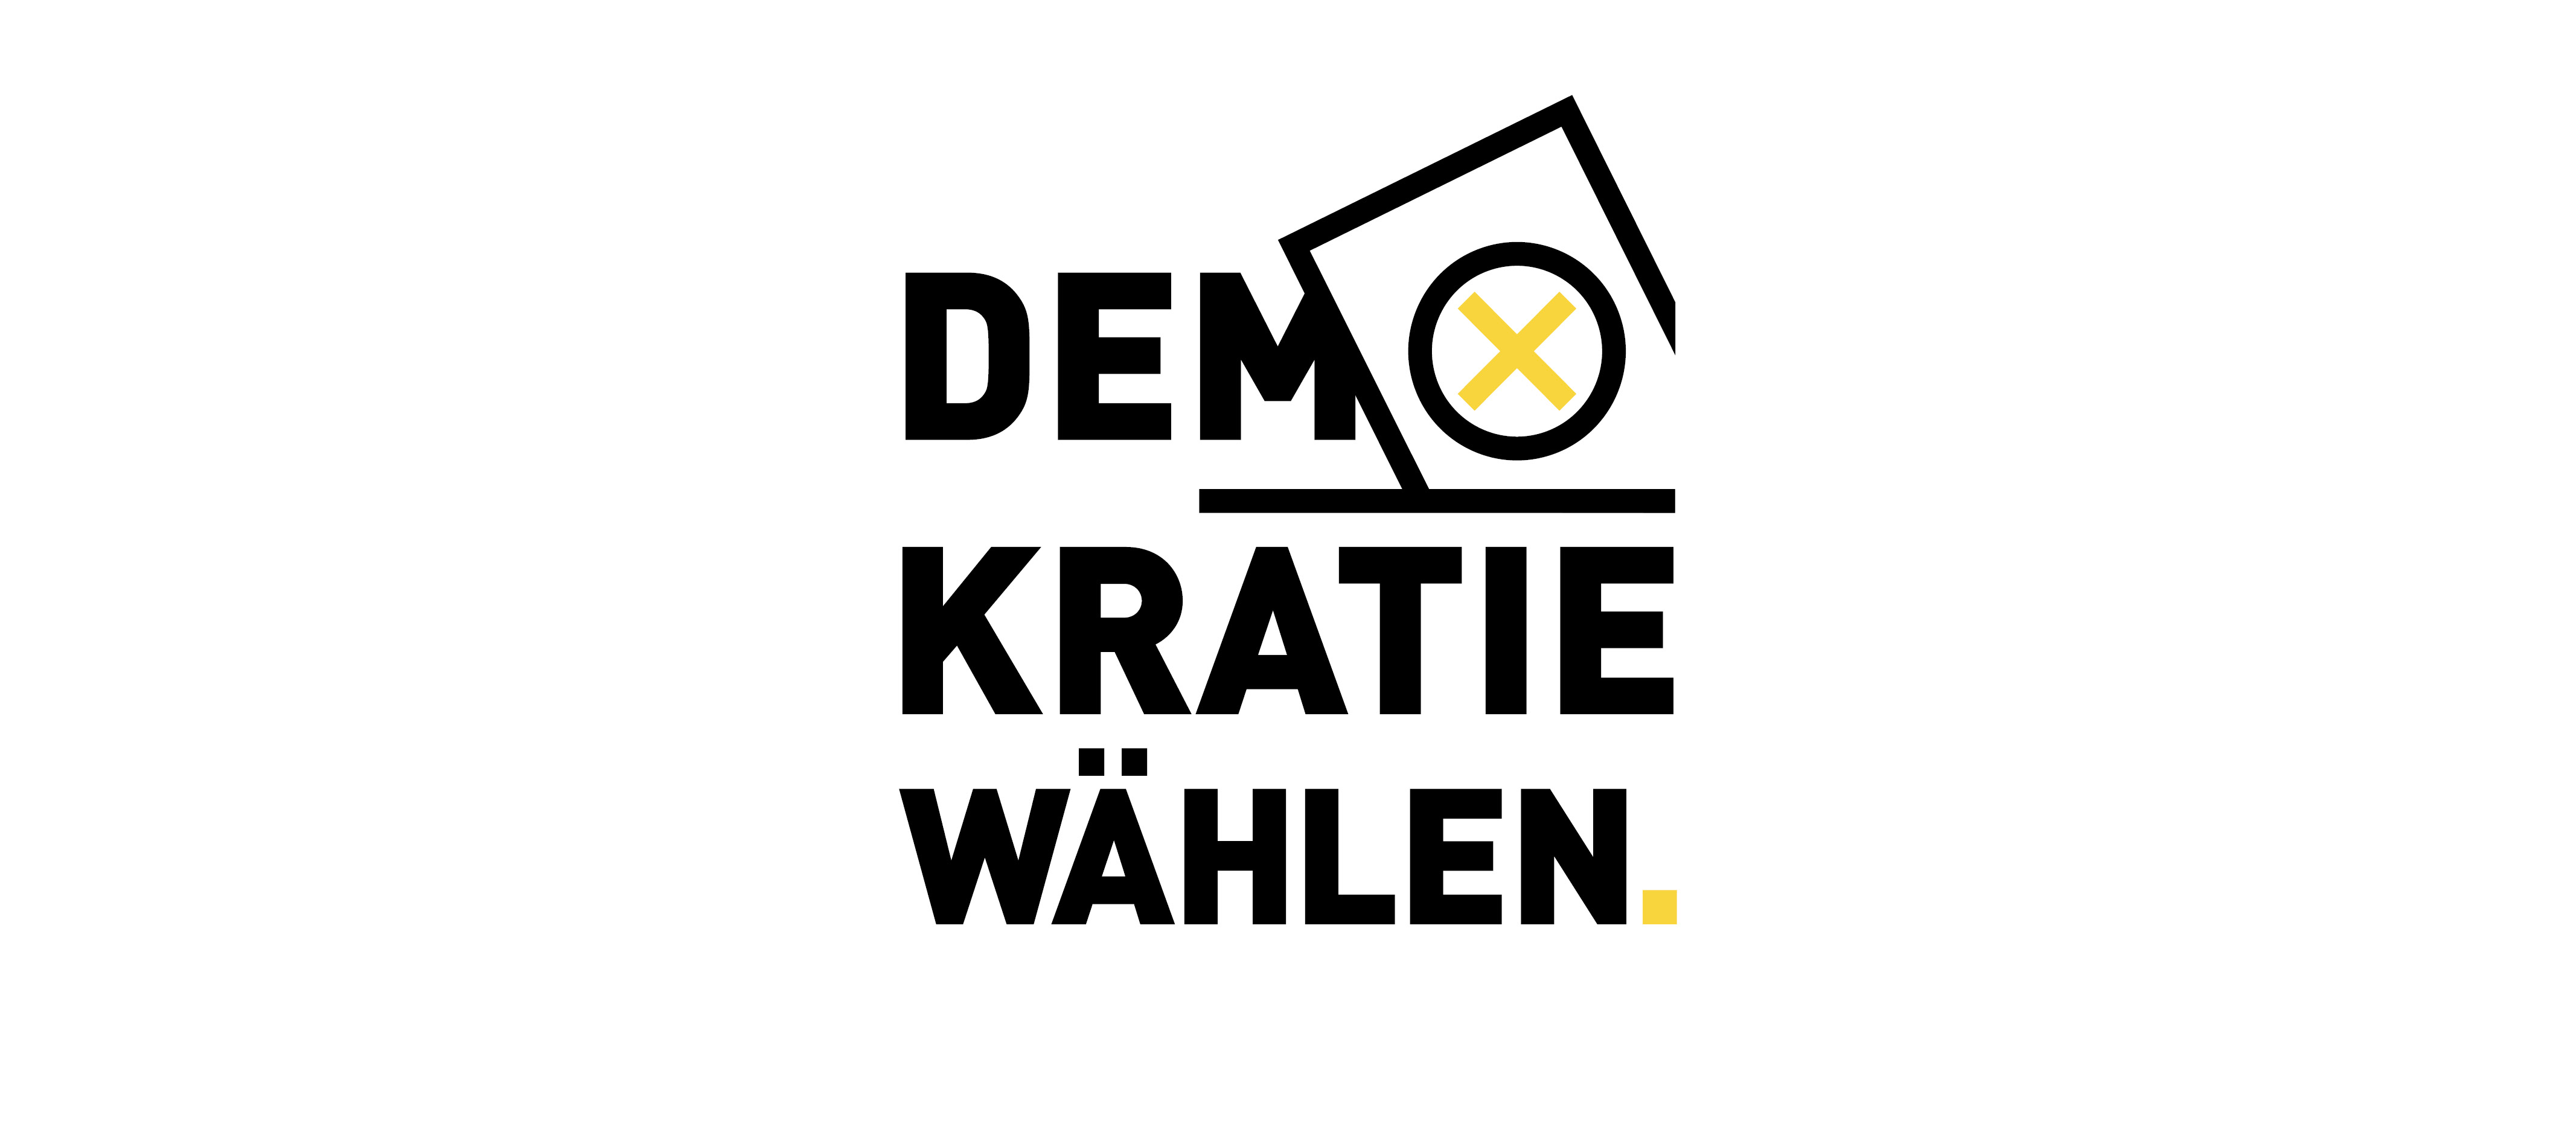 Demokratie wählen. Eine Aktion der Kunstsammlungen Chemnitz mit dem Künstler Steffen Jacob und eine Präsentation von Plakaten des Vereins plakat-sozial